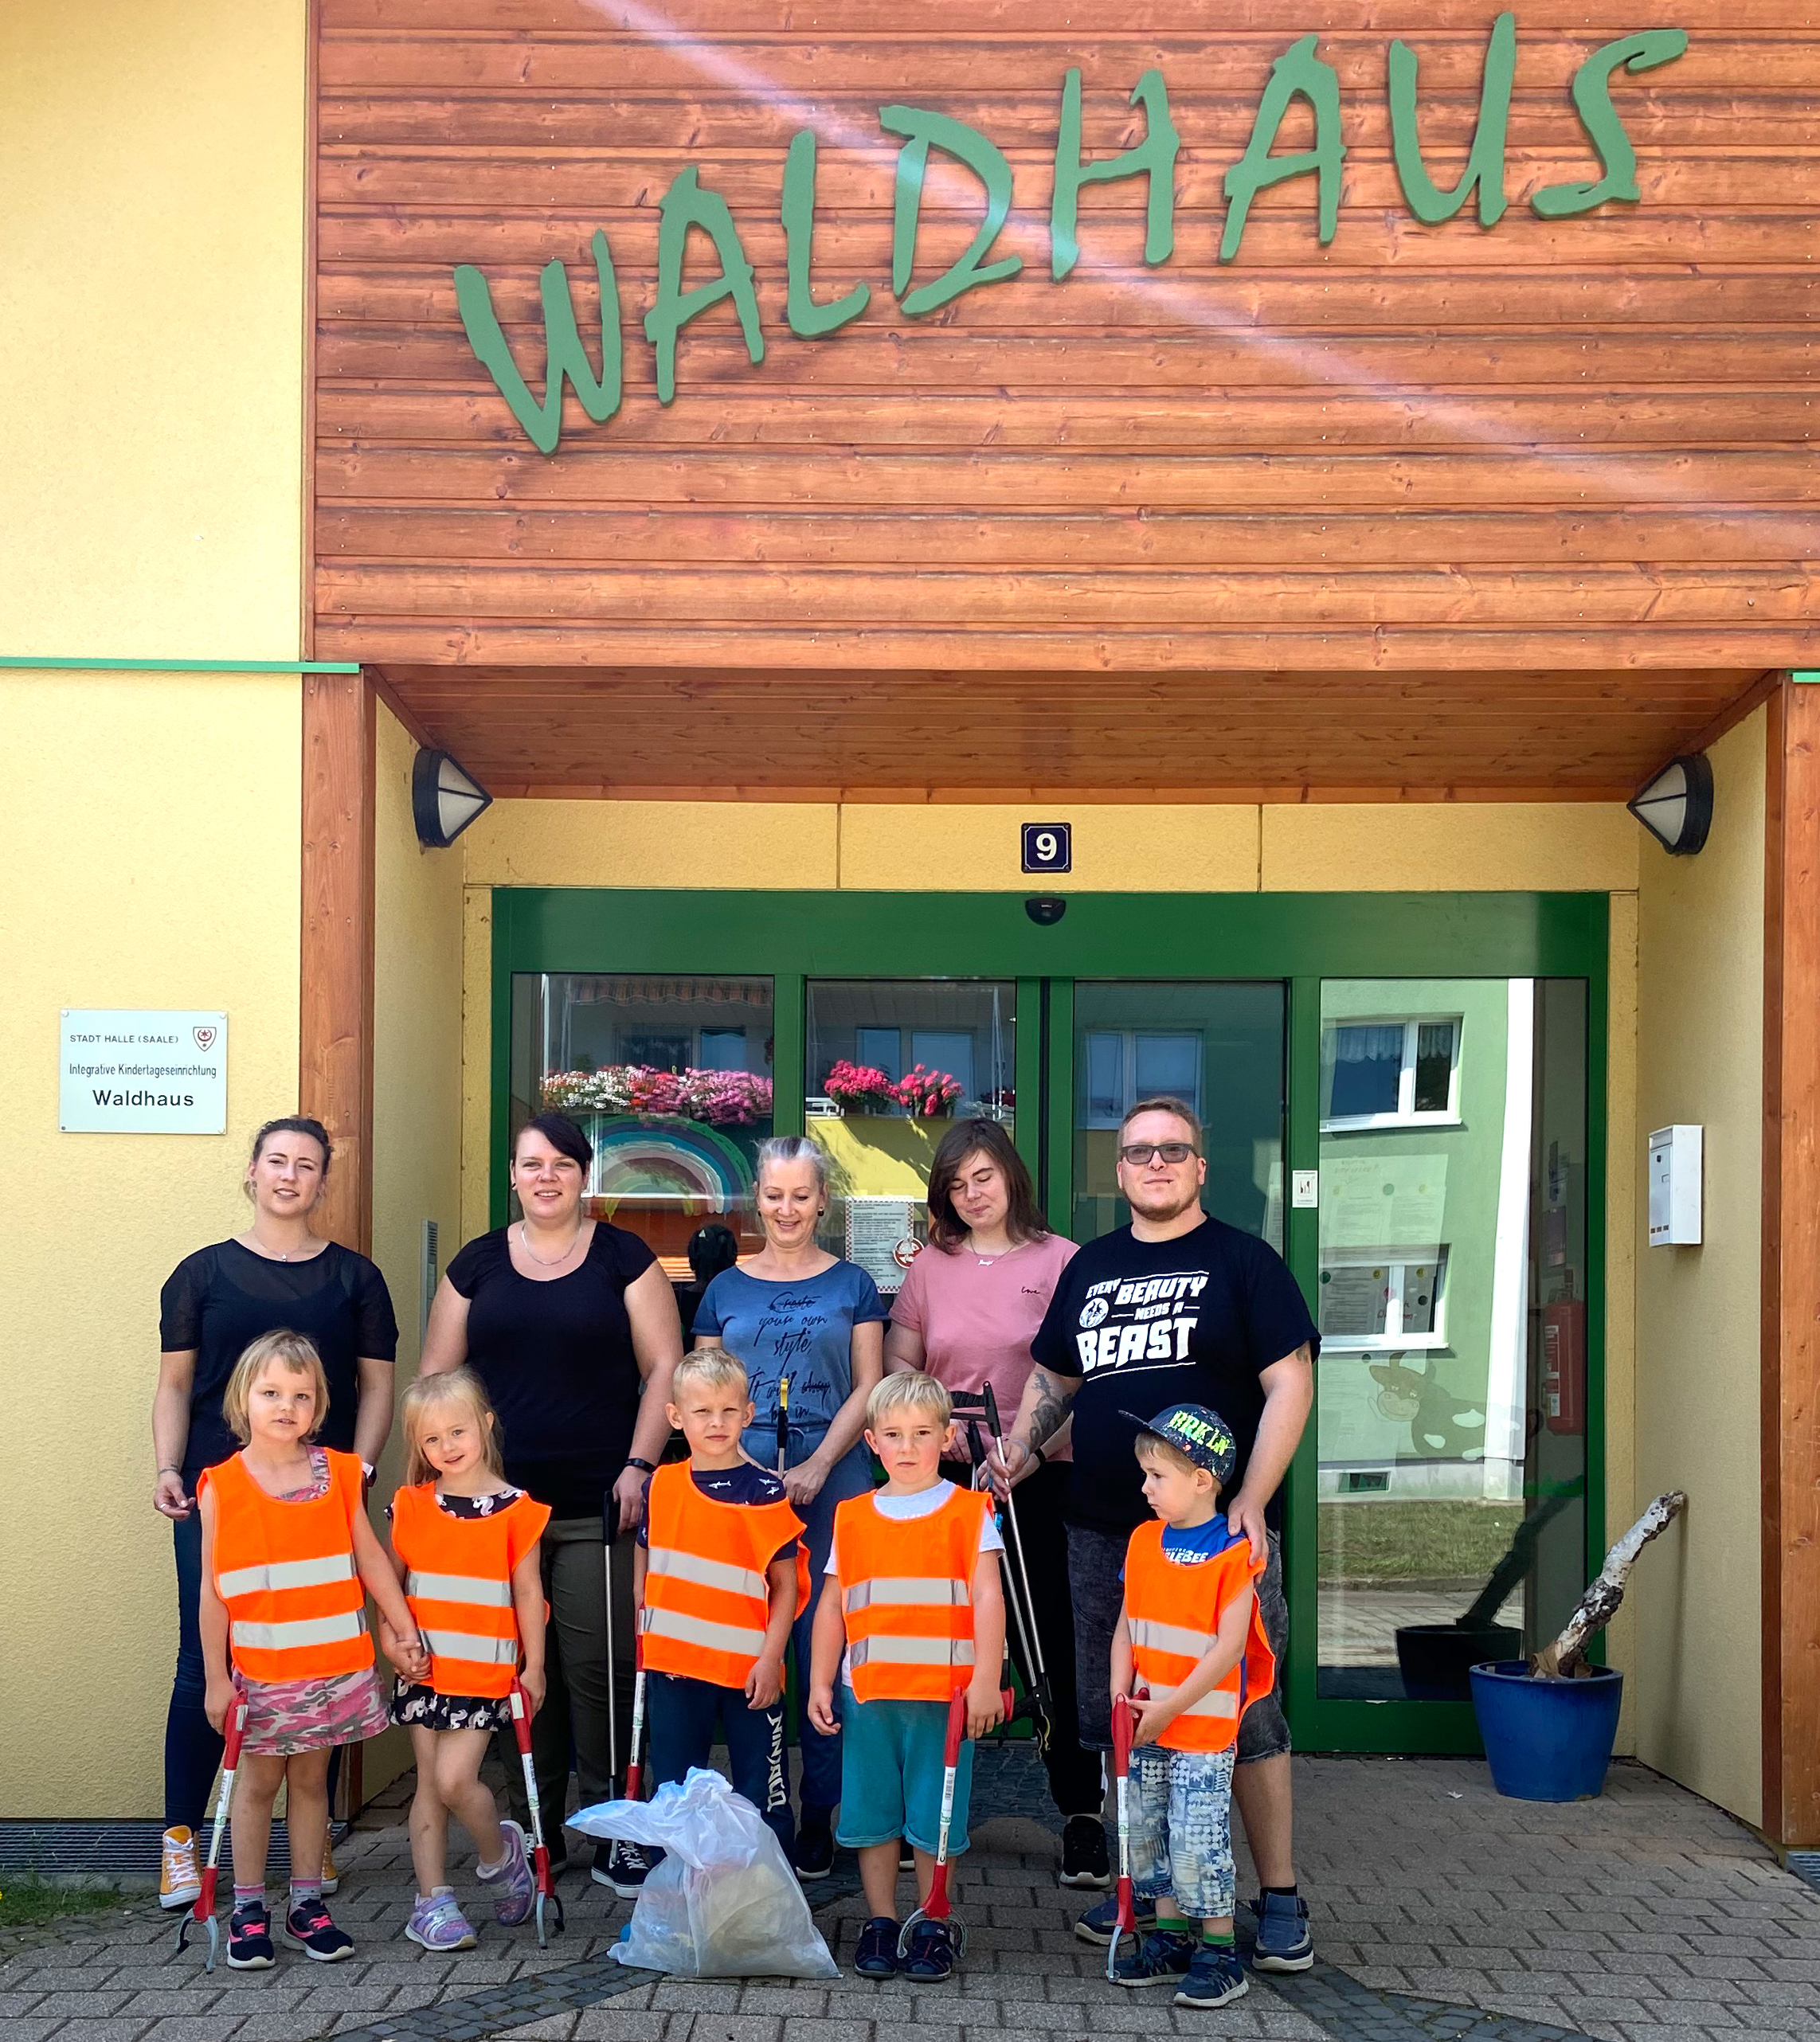 Das Bild zeigt fünf Erwachsene und fünf Kinder mit Warnweste und Müllgreifern in den Händen vor einer Eingangstür, über der in grünen Buchstaben "Waldhaus" steht. Vor den Kindern steht ein weißer Müllsack.